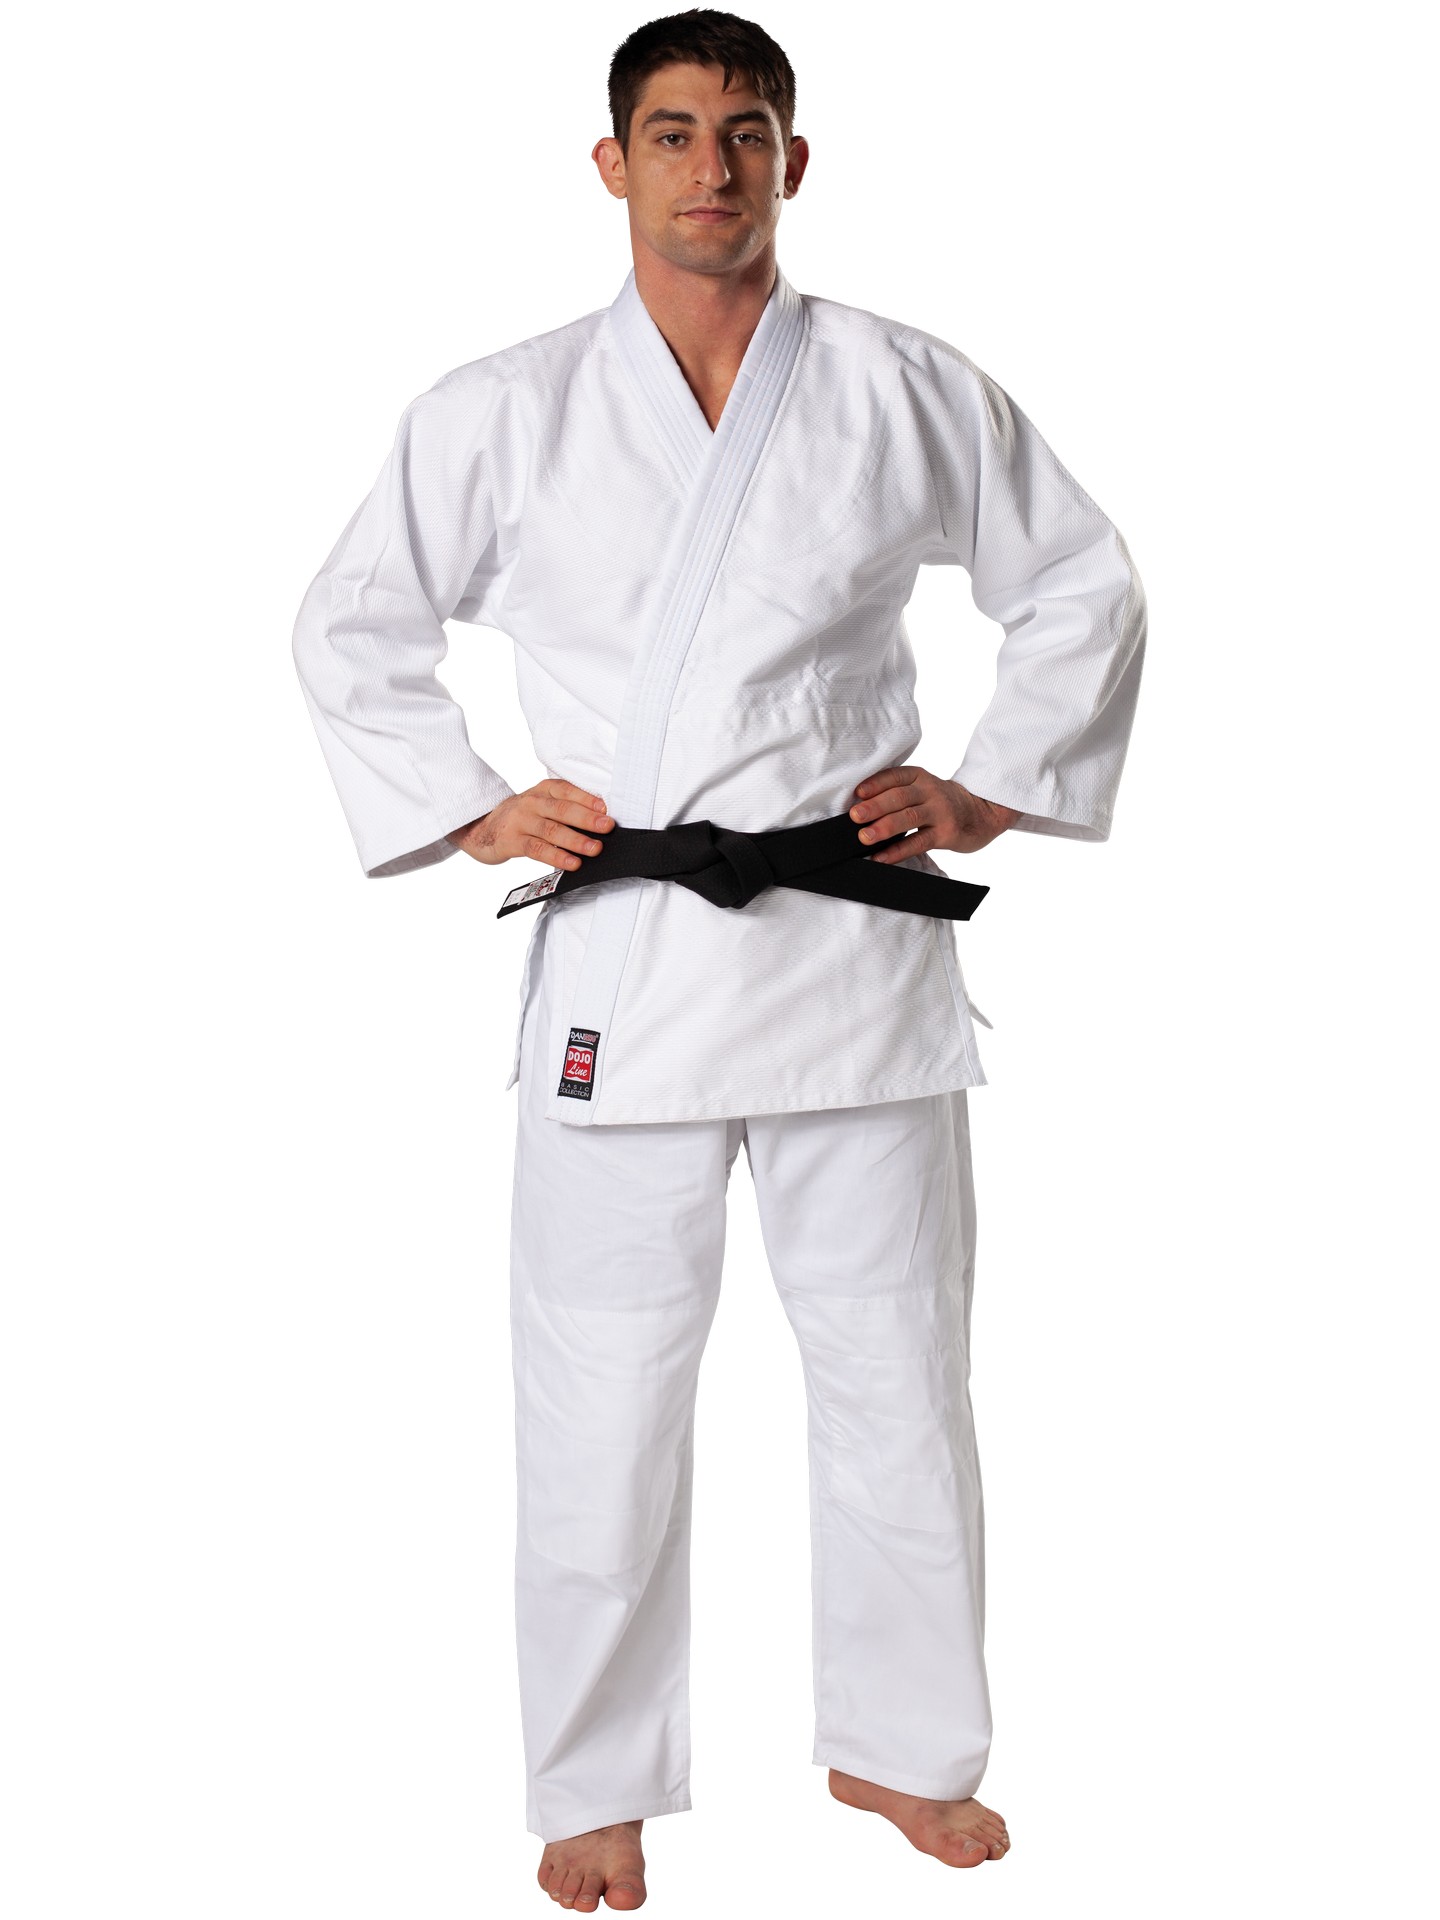 DANRHO Dojo-Line Judoanzug Judo-Gi Brazilian Jiu Jitsu Kampfsportbekleidung Budoartikel K1-Kampfsportartikel